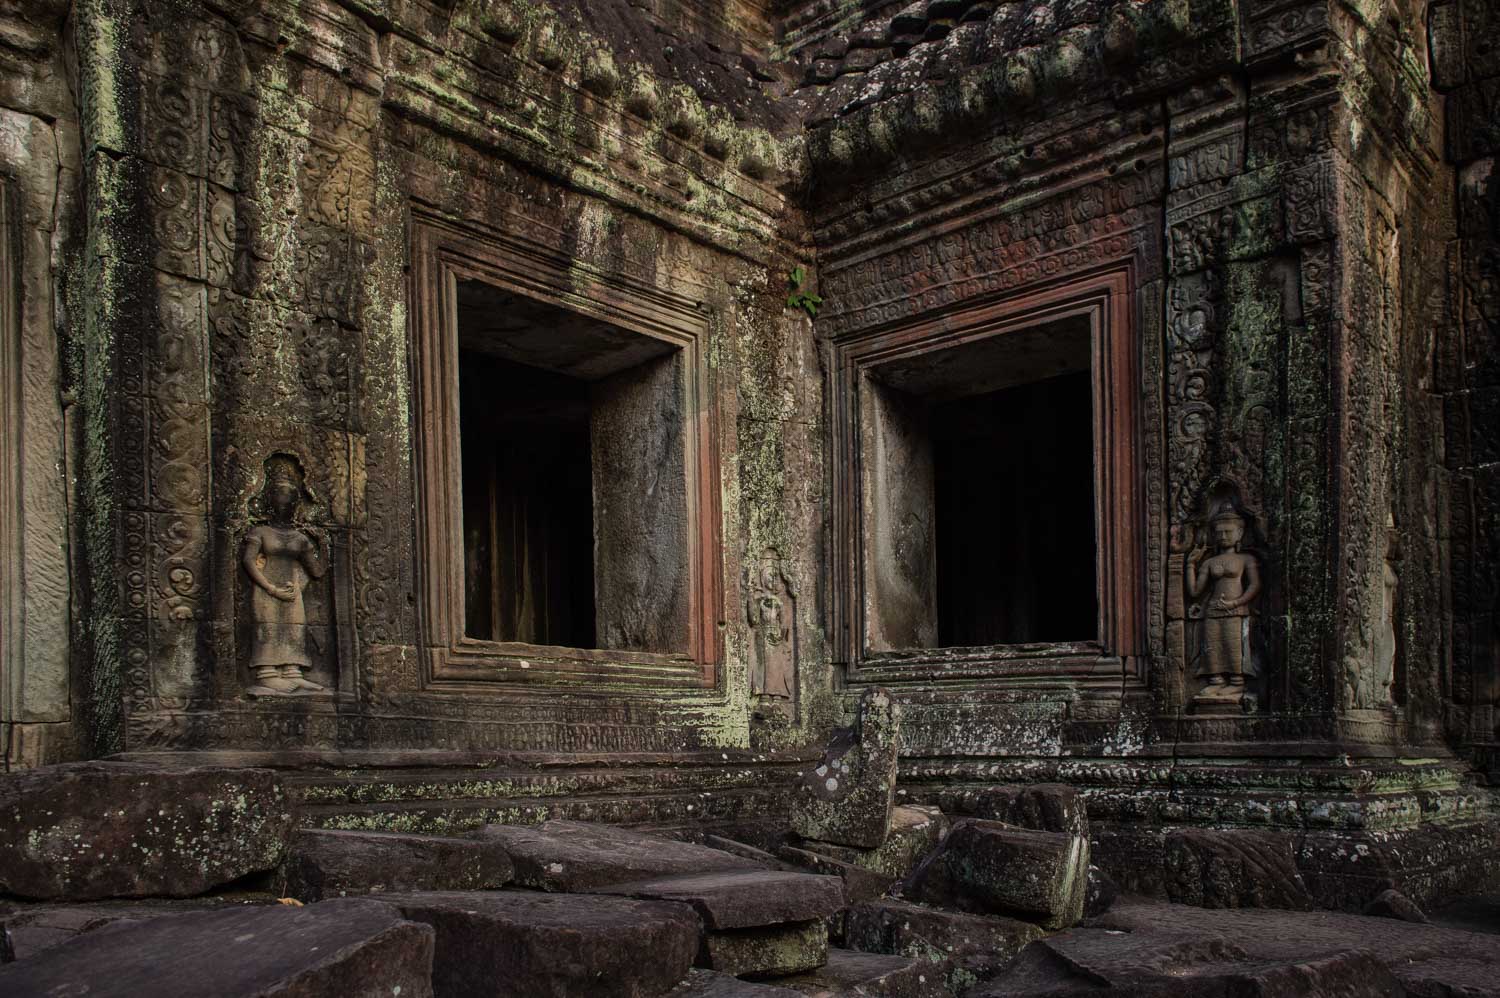 Preah Khan Temple;&nbsp;Nikon D4S, 24mm, f/5.6, 1/250s, ISO 400